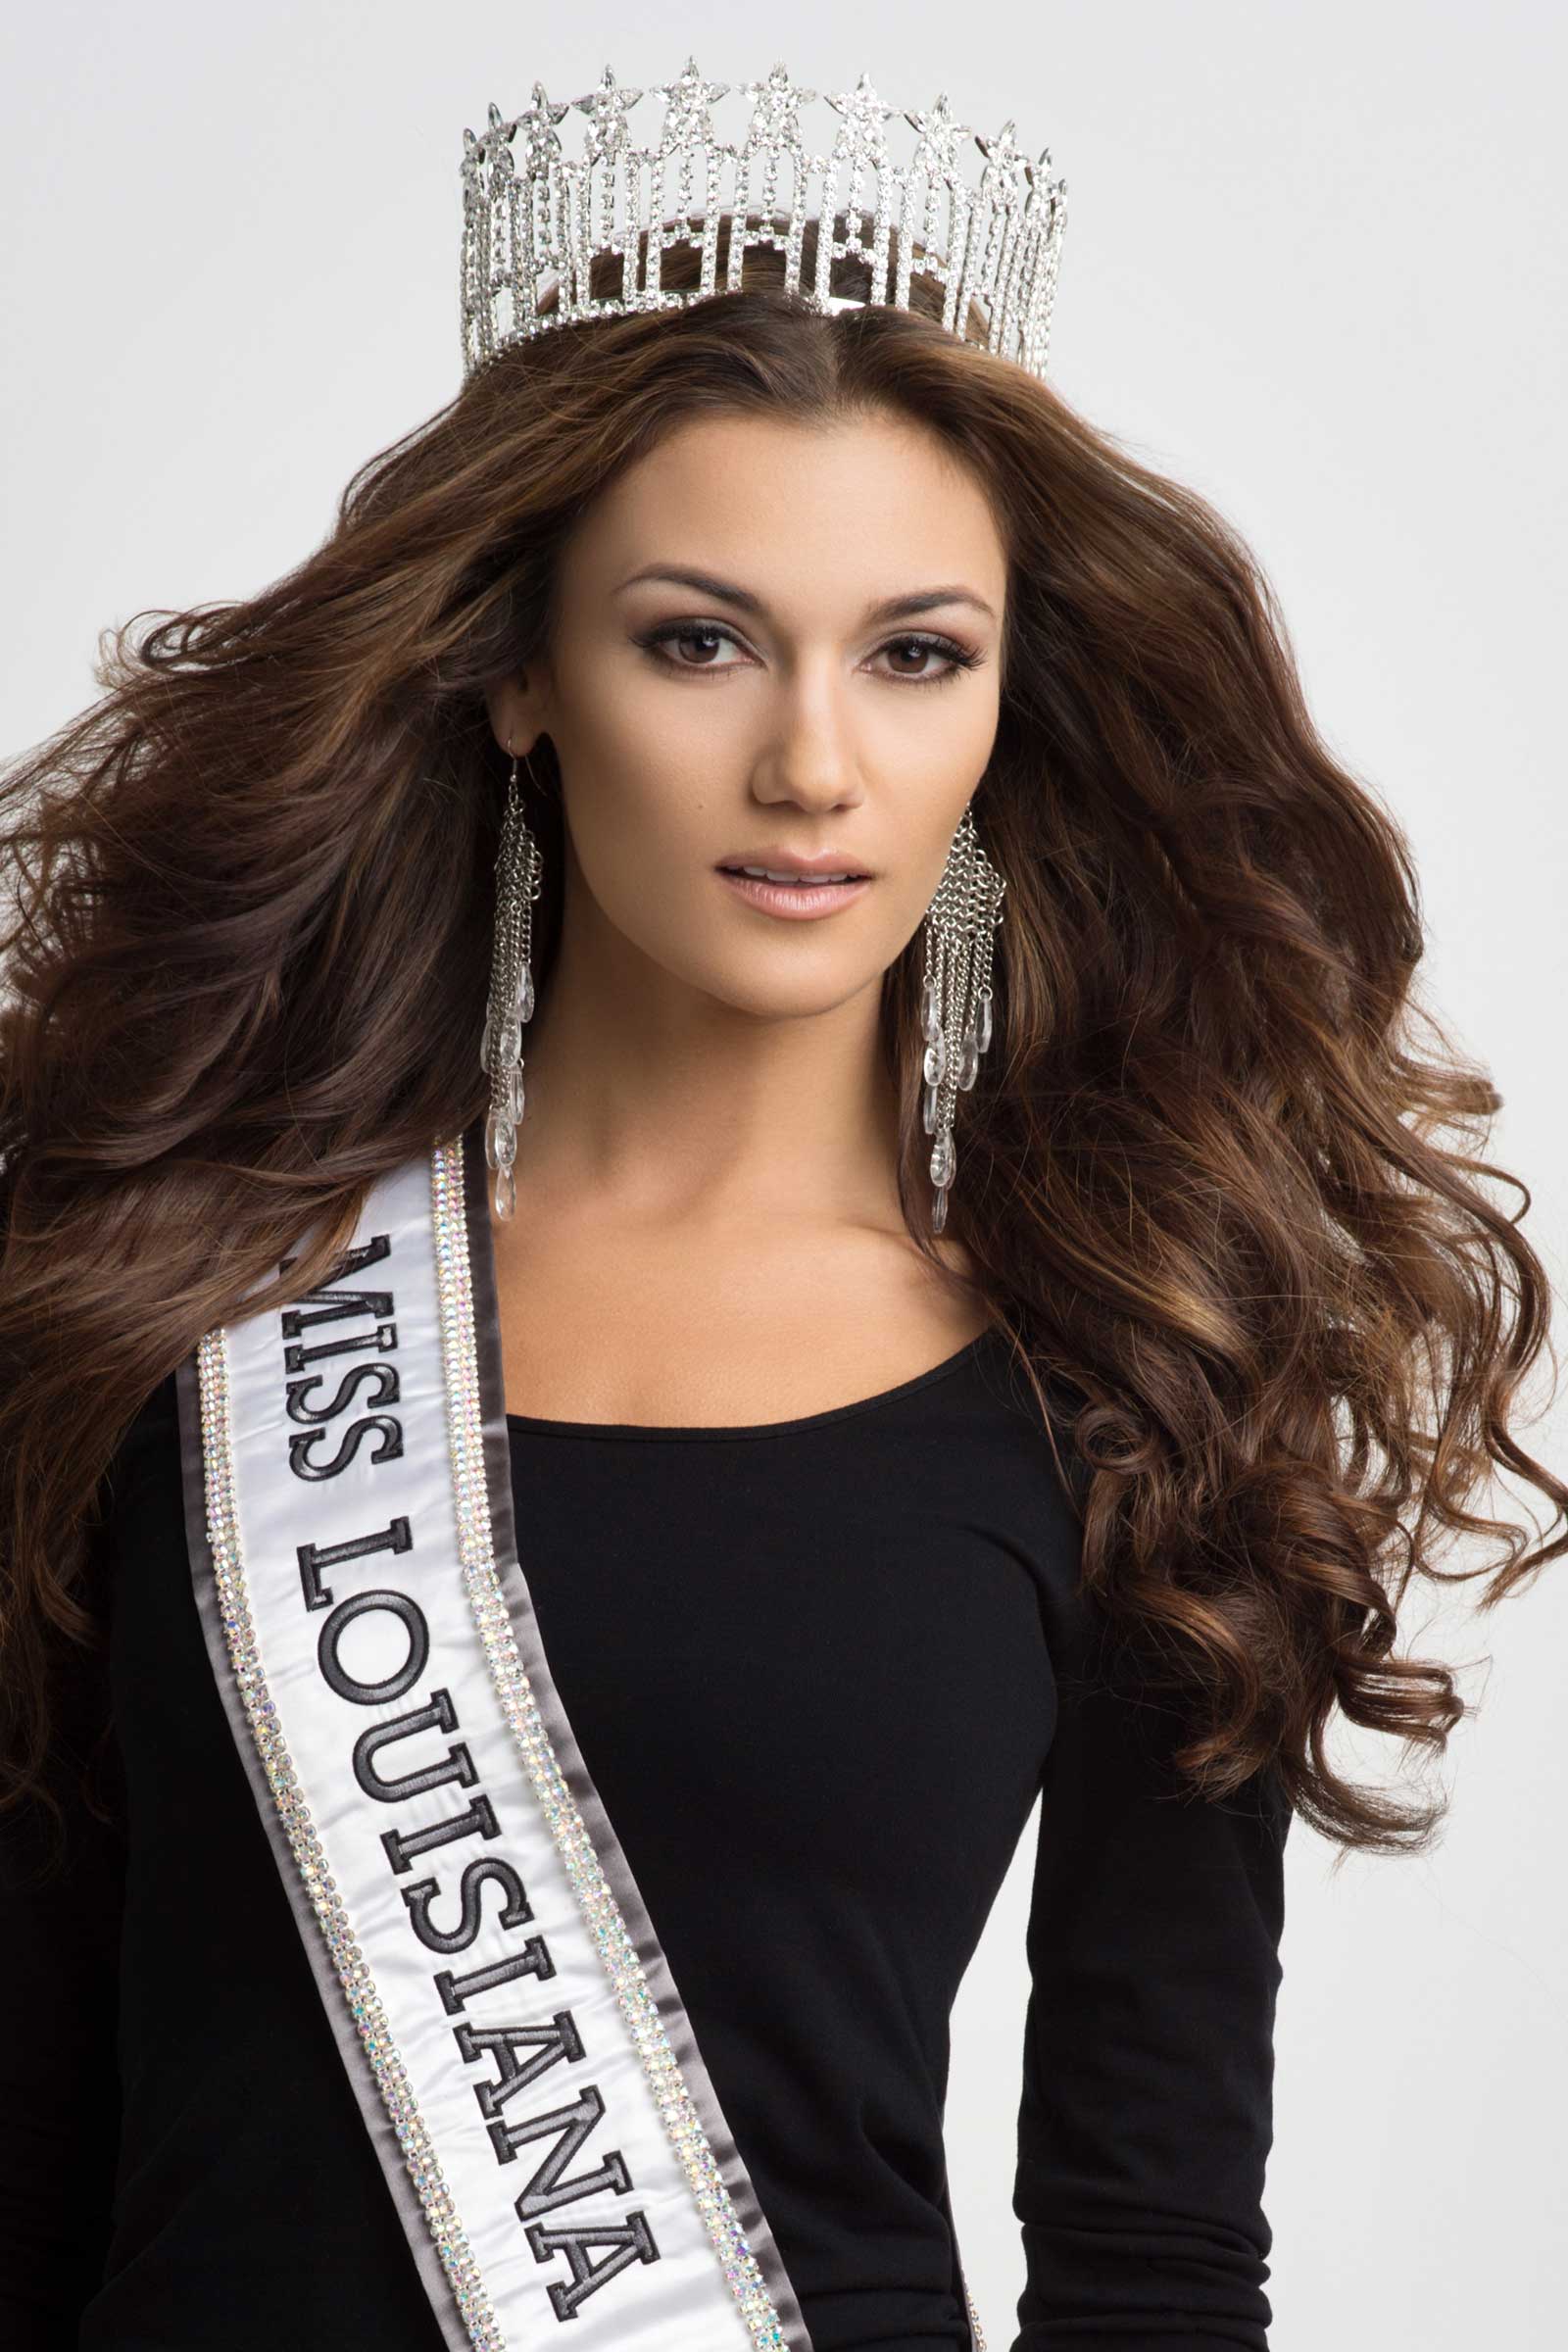 Miss Louisiana USA